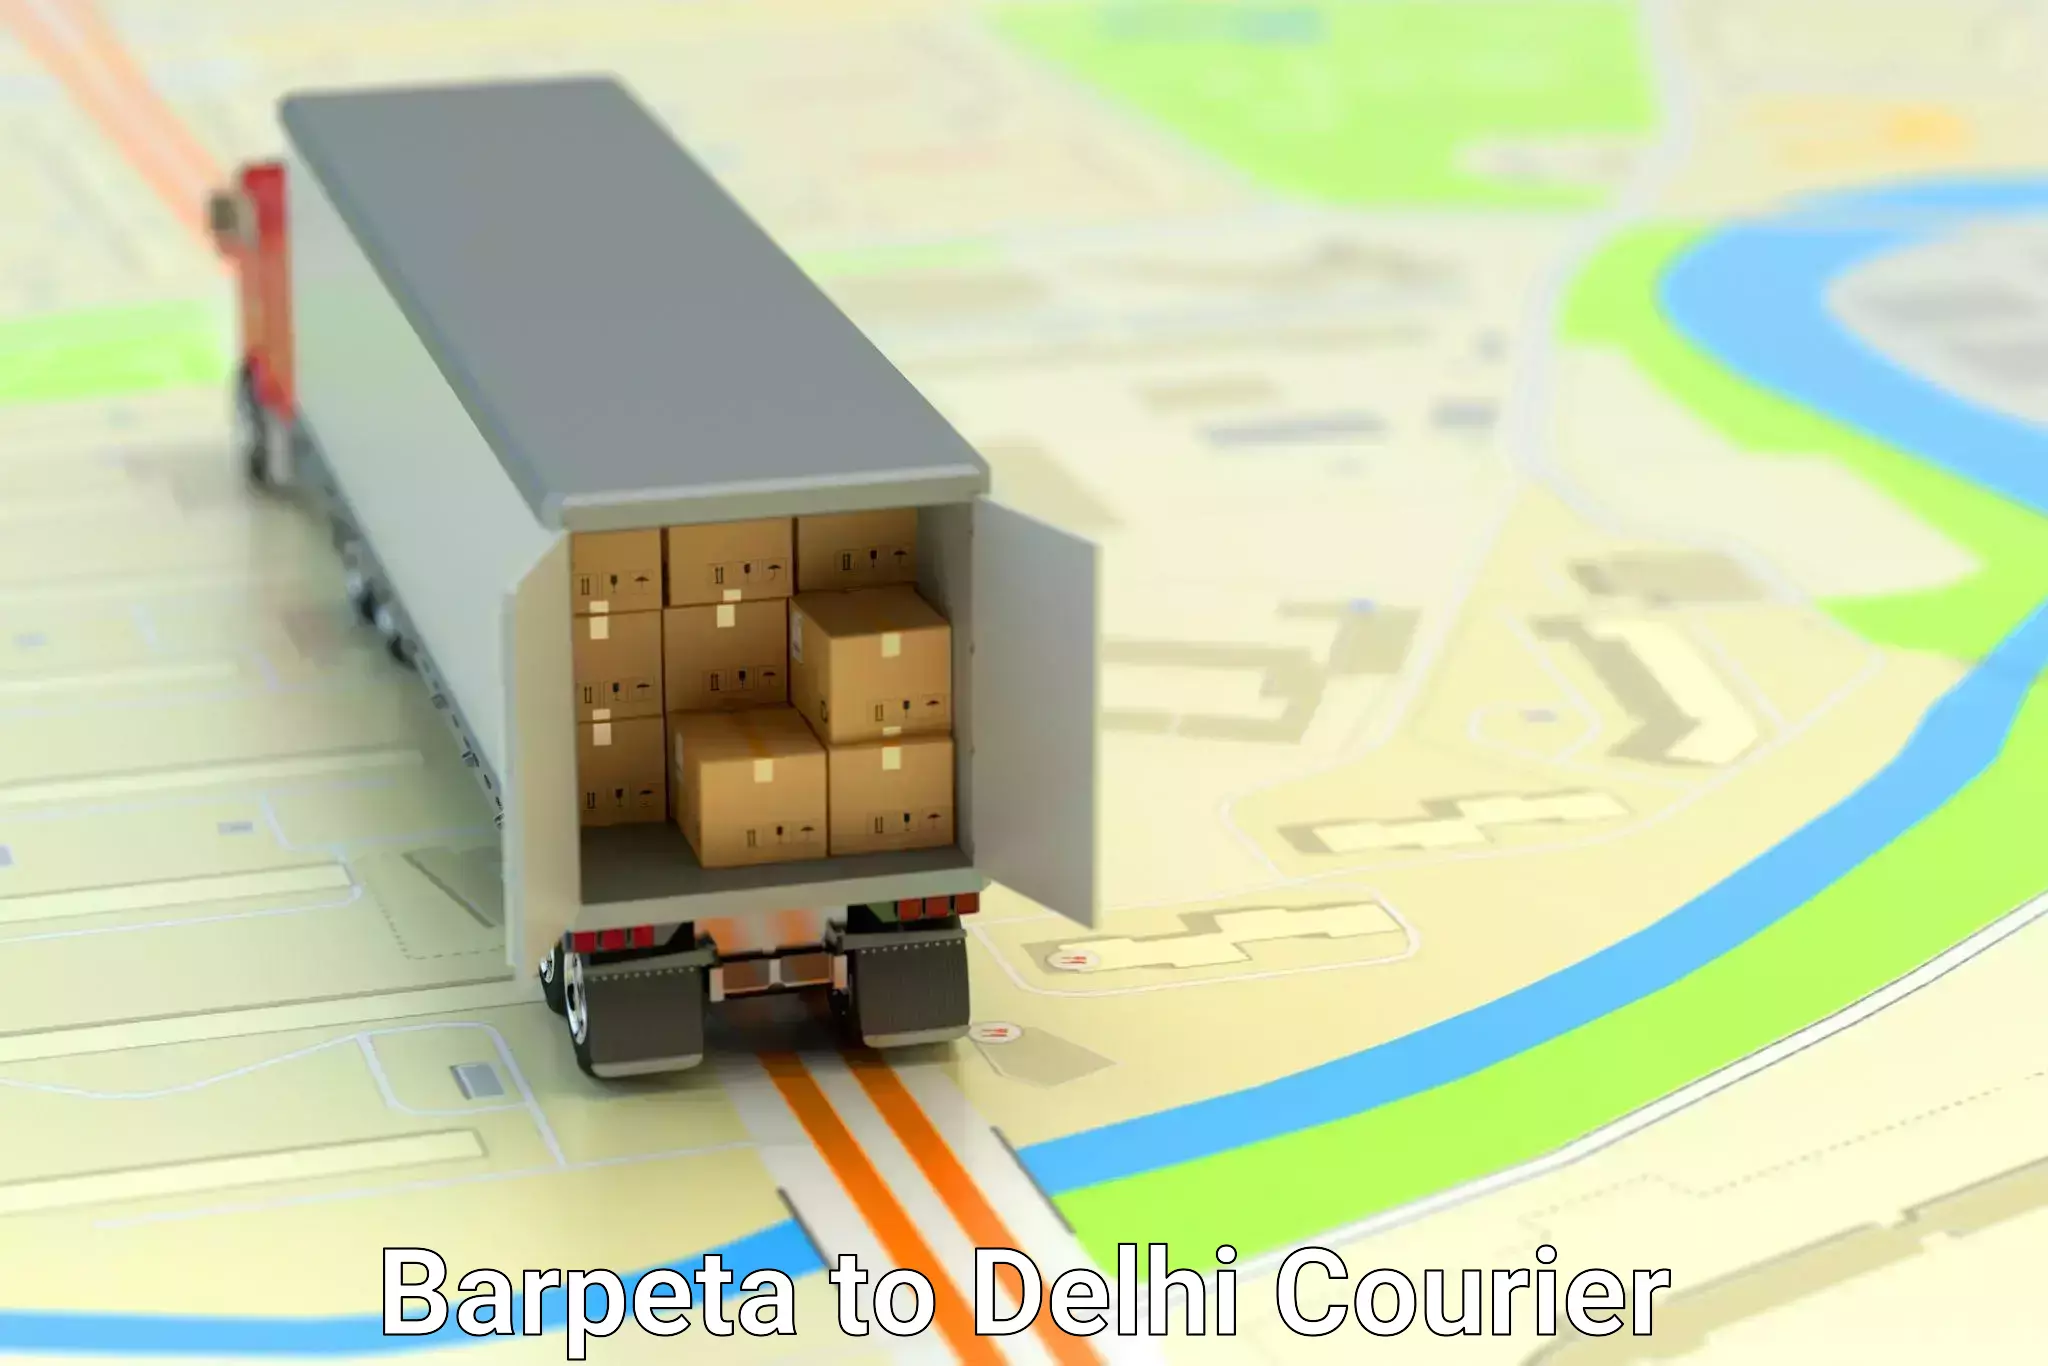 Fast delivery service Barpeta to Delhi